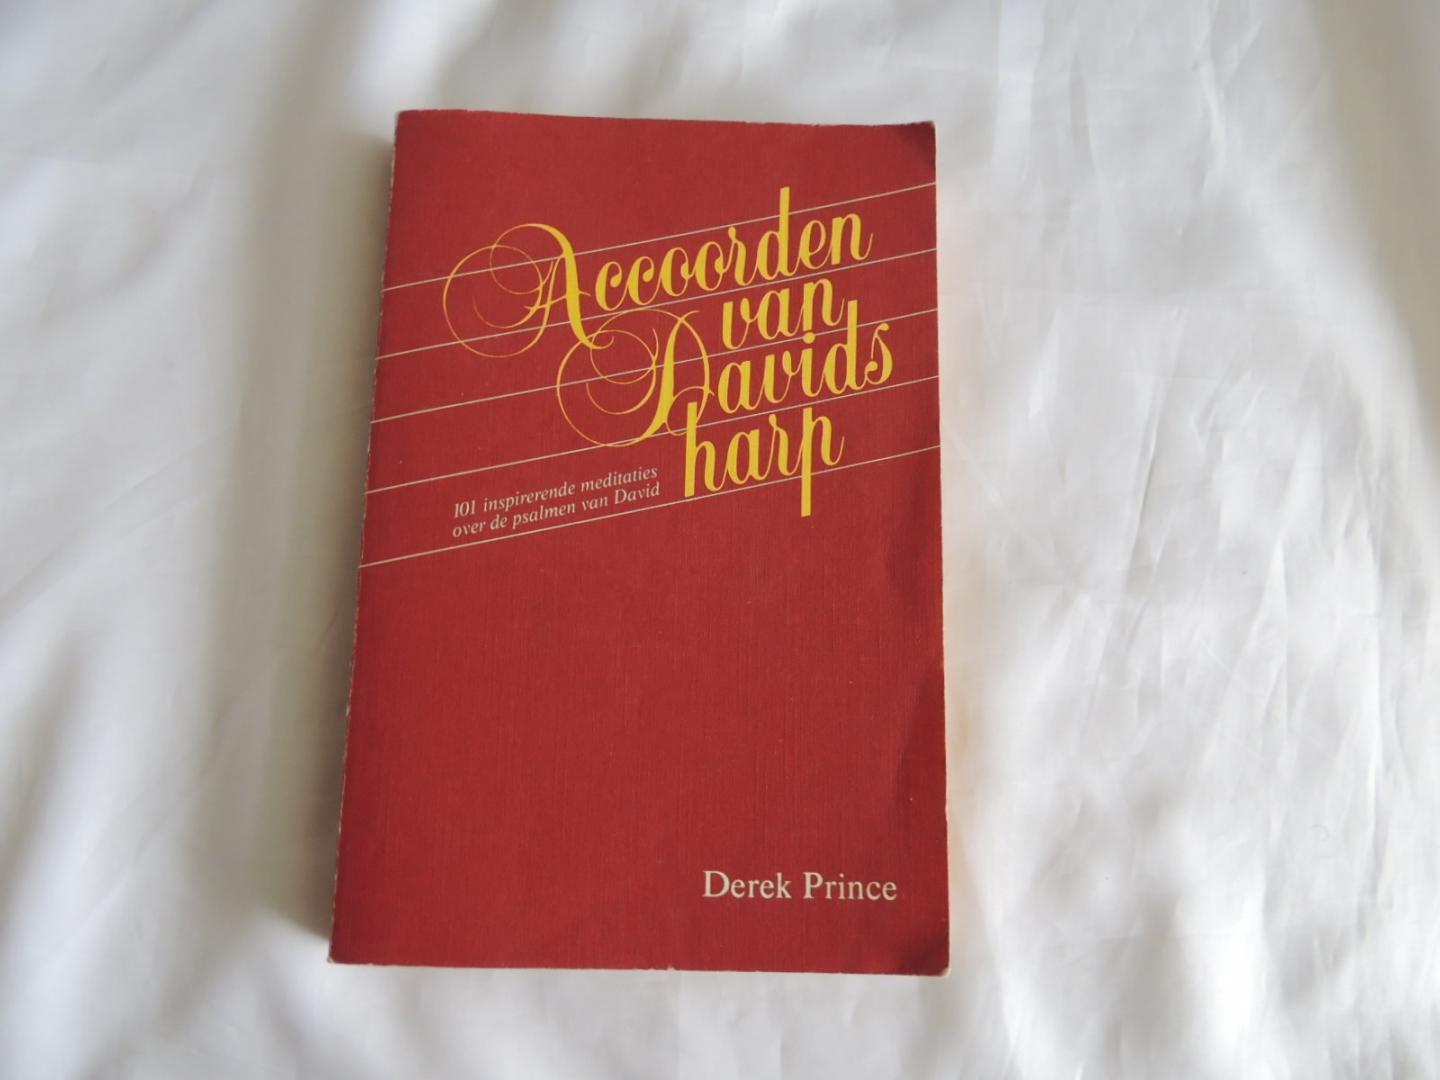 Prince, Derek - Accoorden van Davids harp - 101 inspirerende meditaties over de Psalmen van David